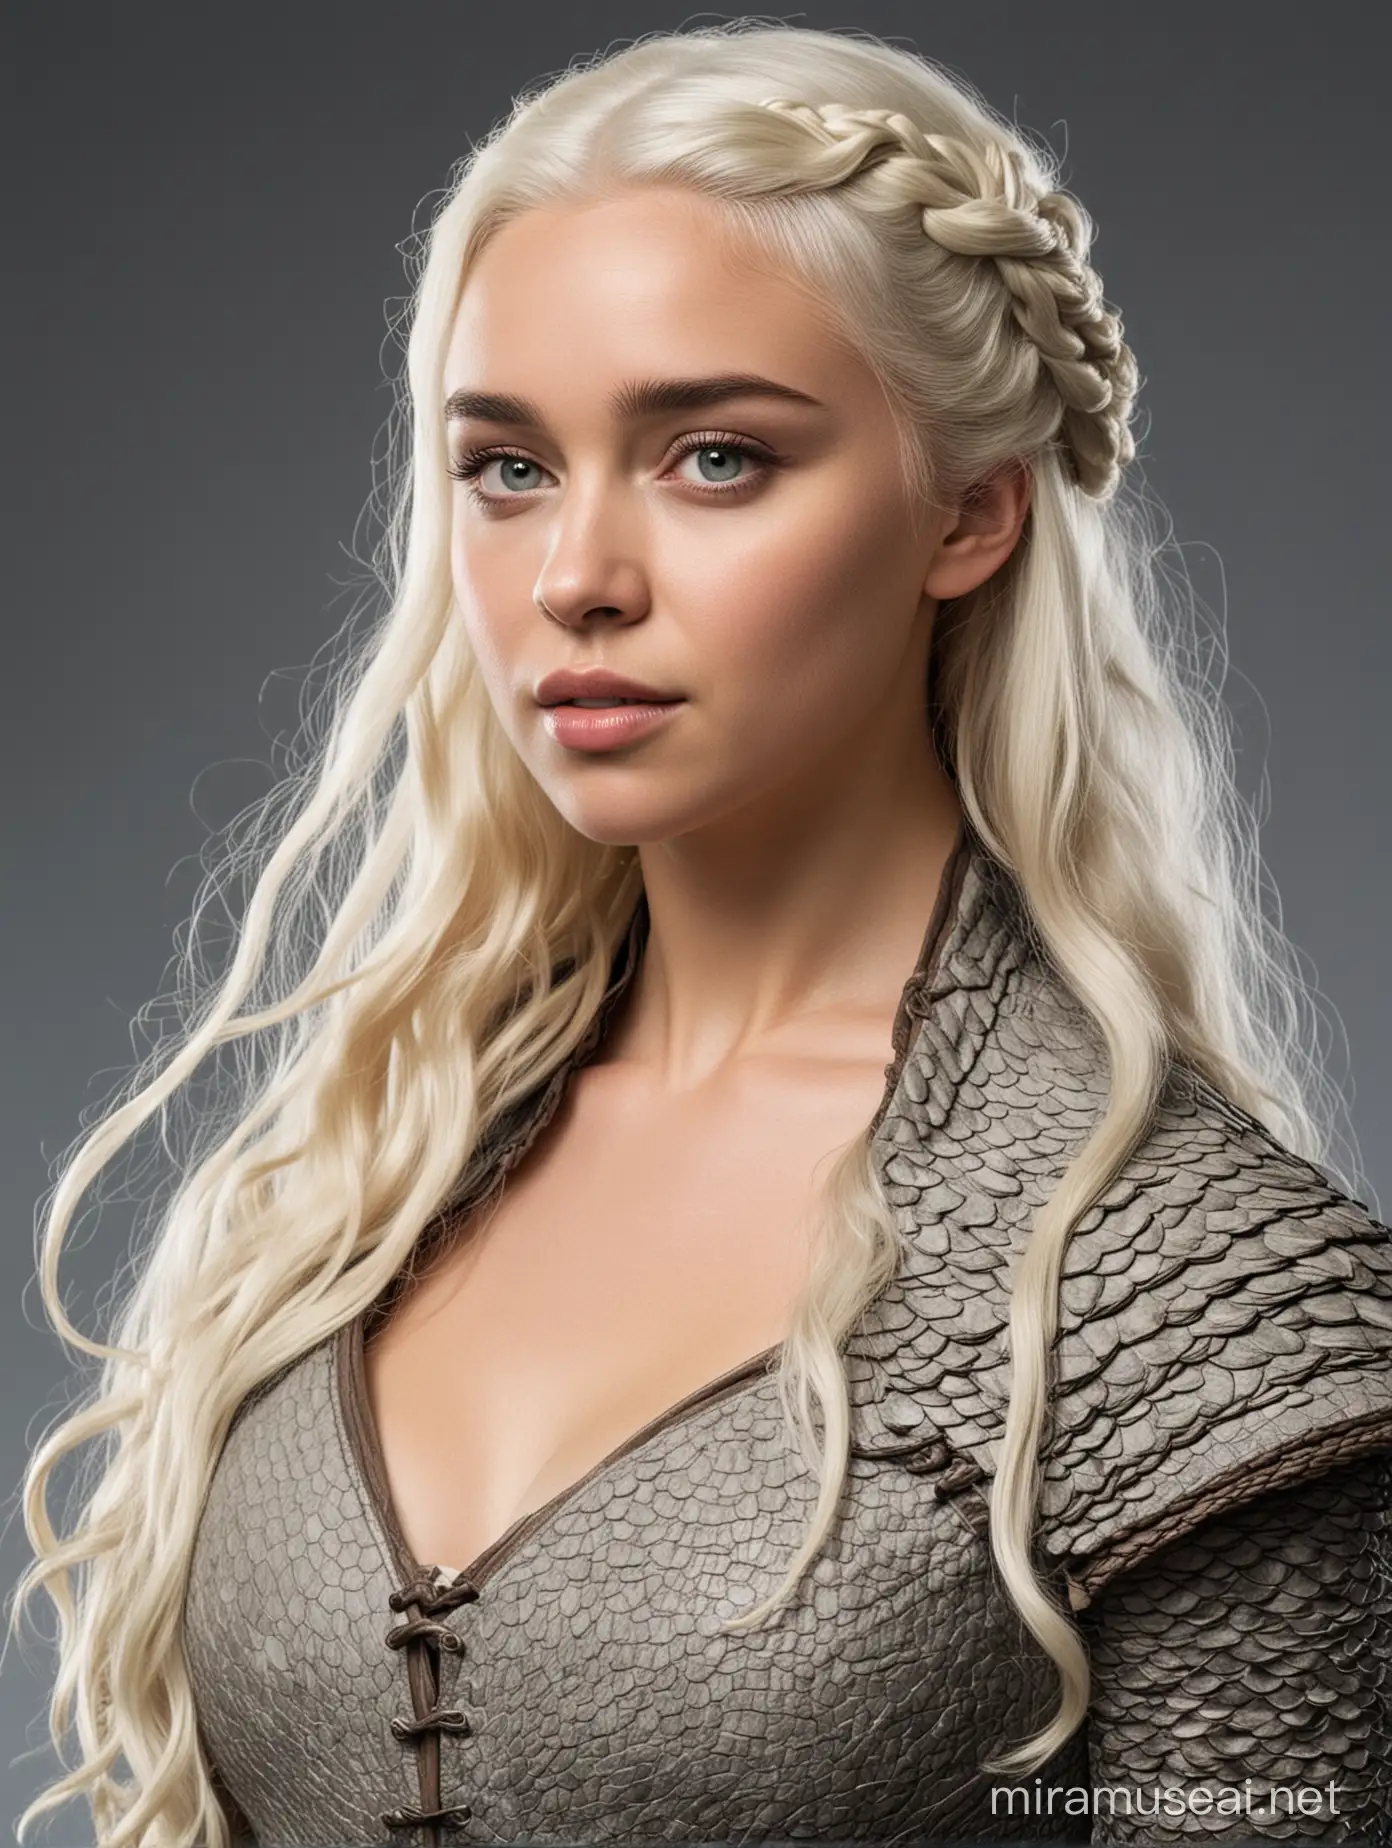 Daenerys Targaryen Fantasy Model Photoshoot